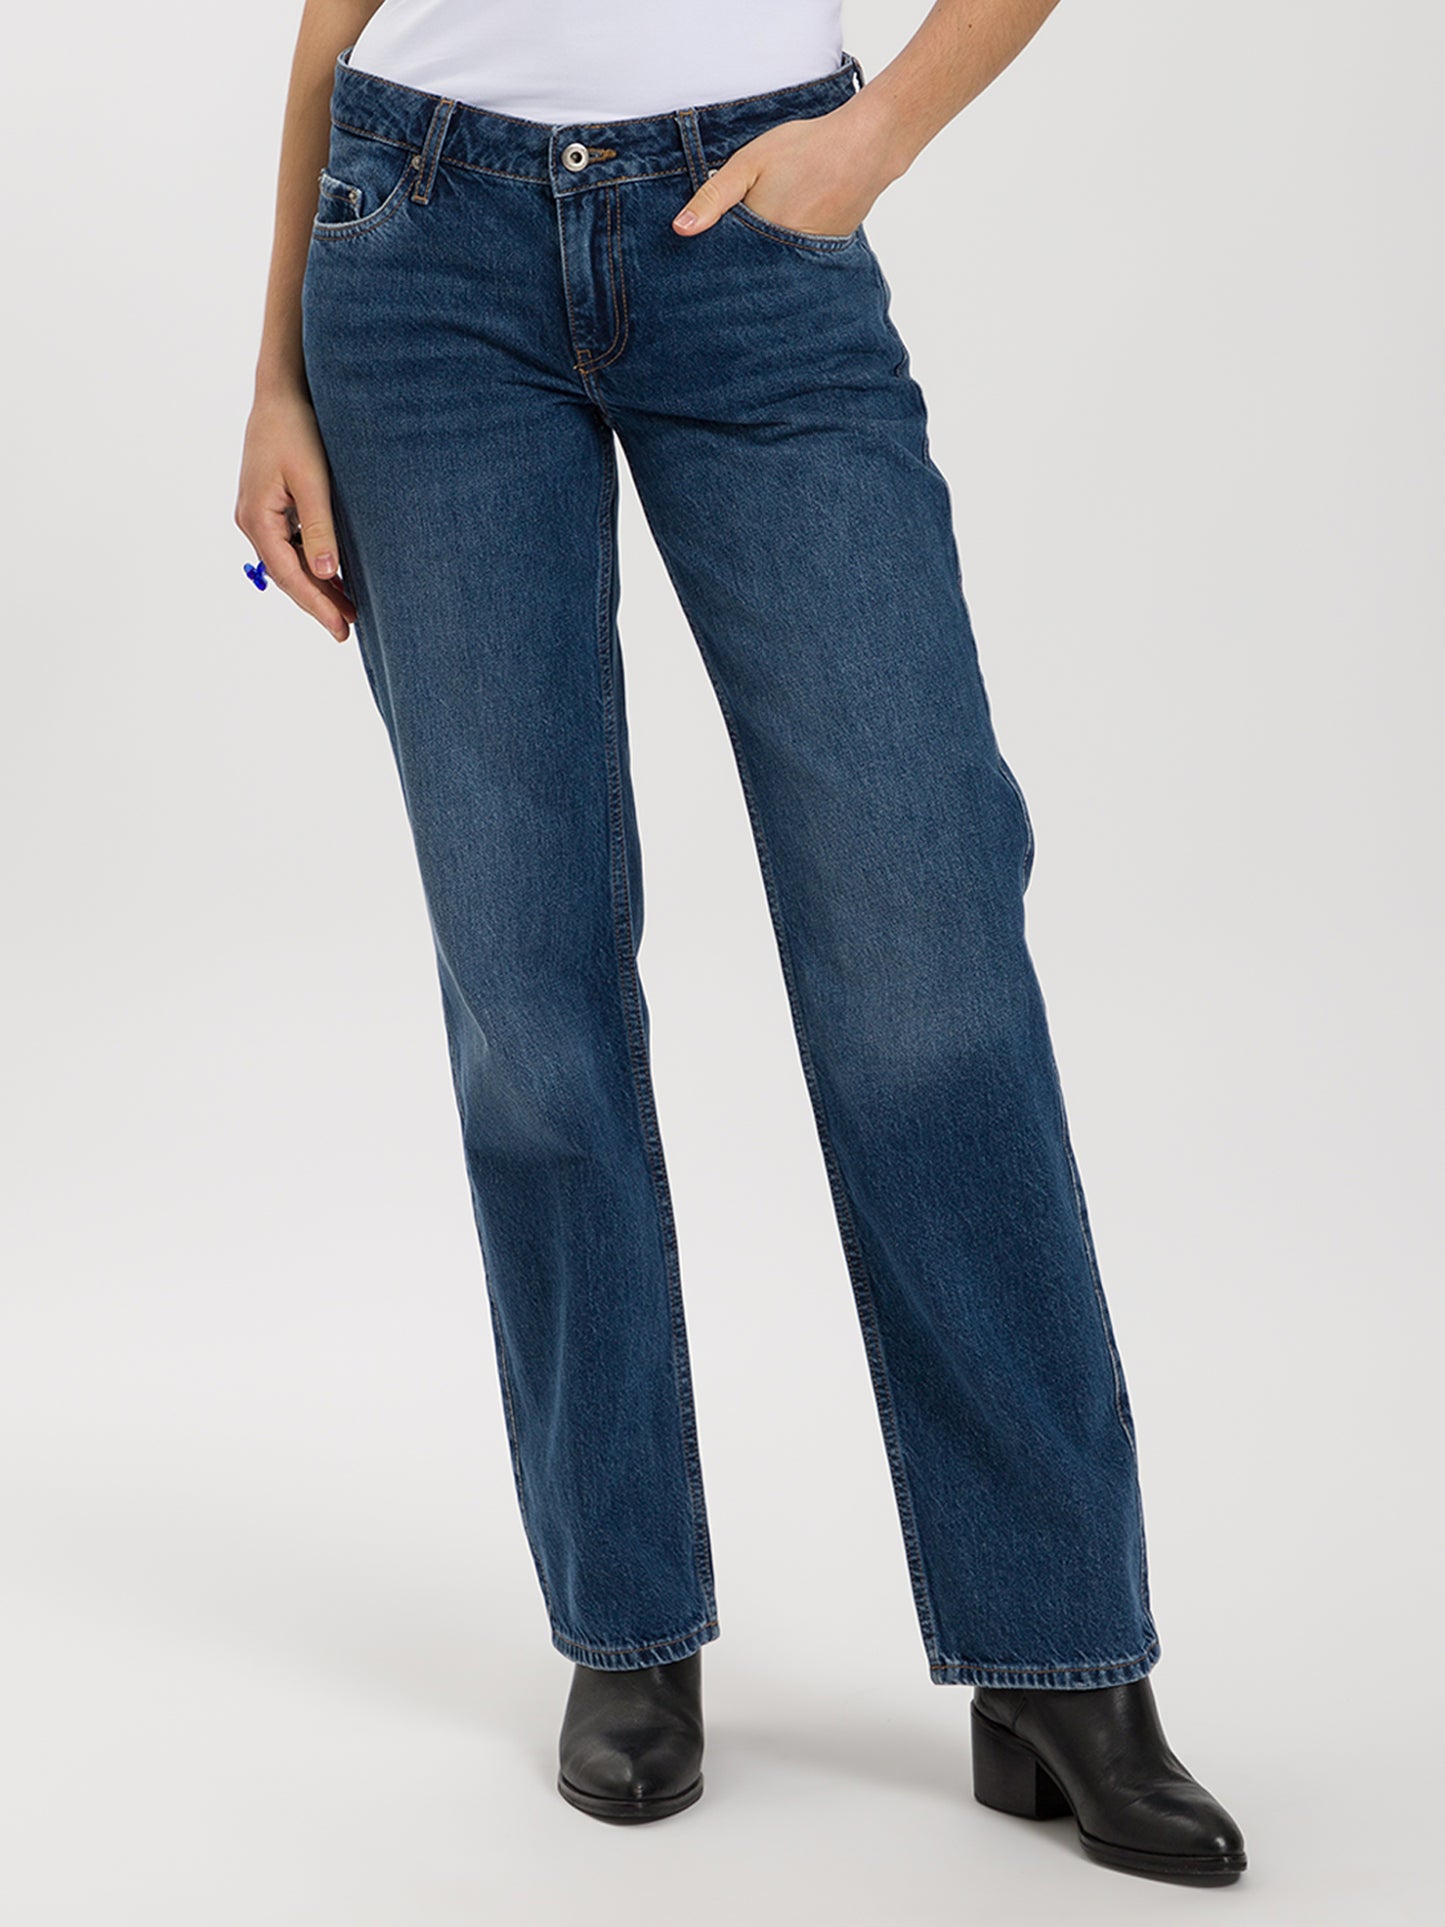 Damen Jeans Straight Fit Low Waist in dunkel blau